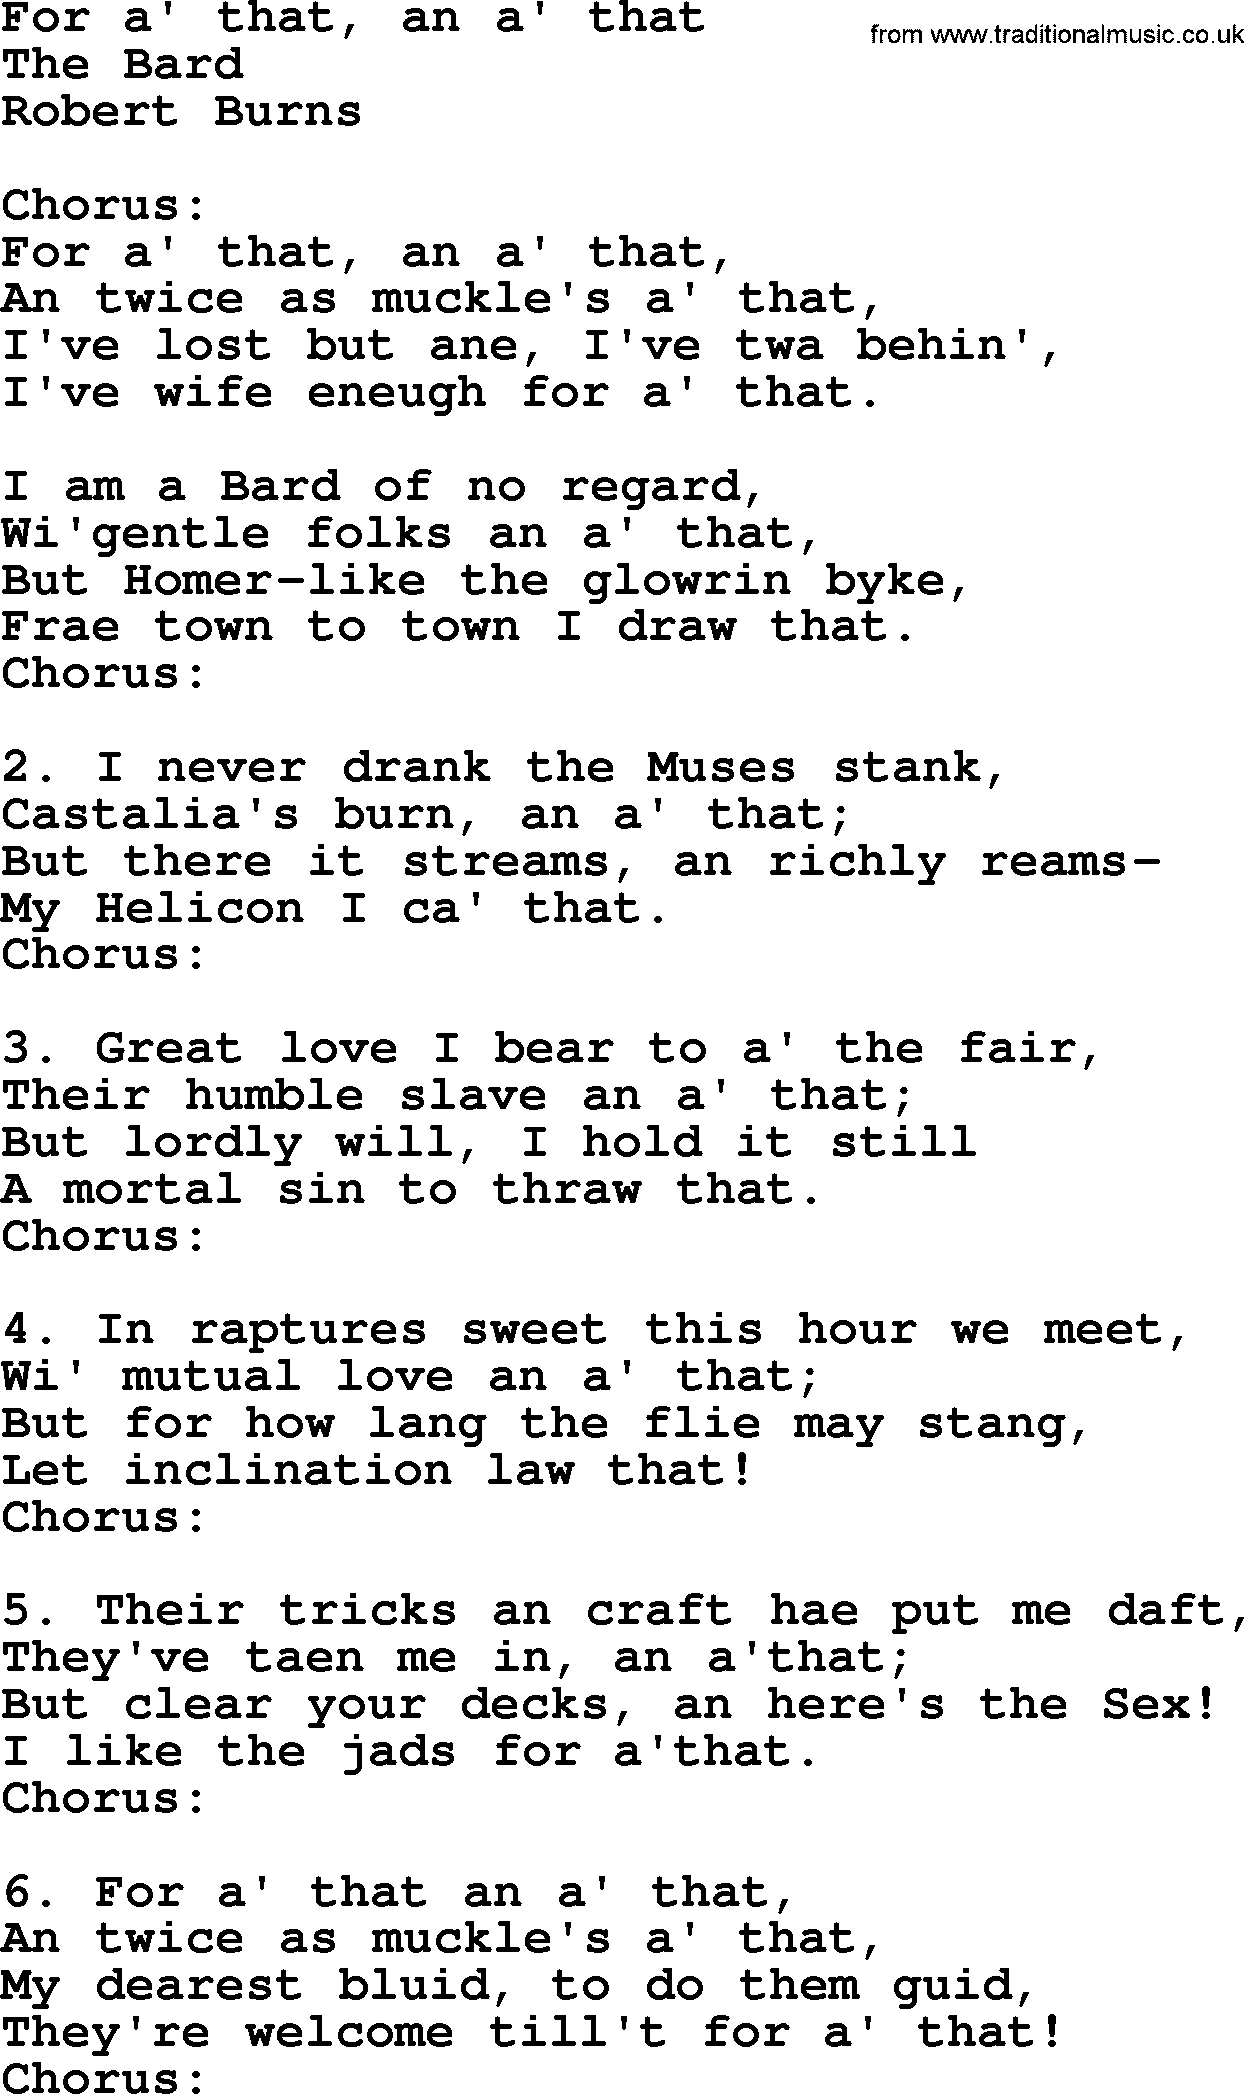 Robert Burns Songs & Lyrics: For A' That, An A' That